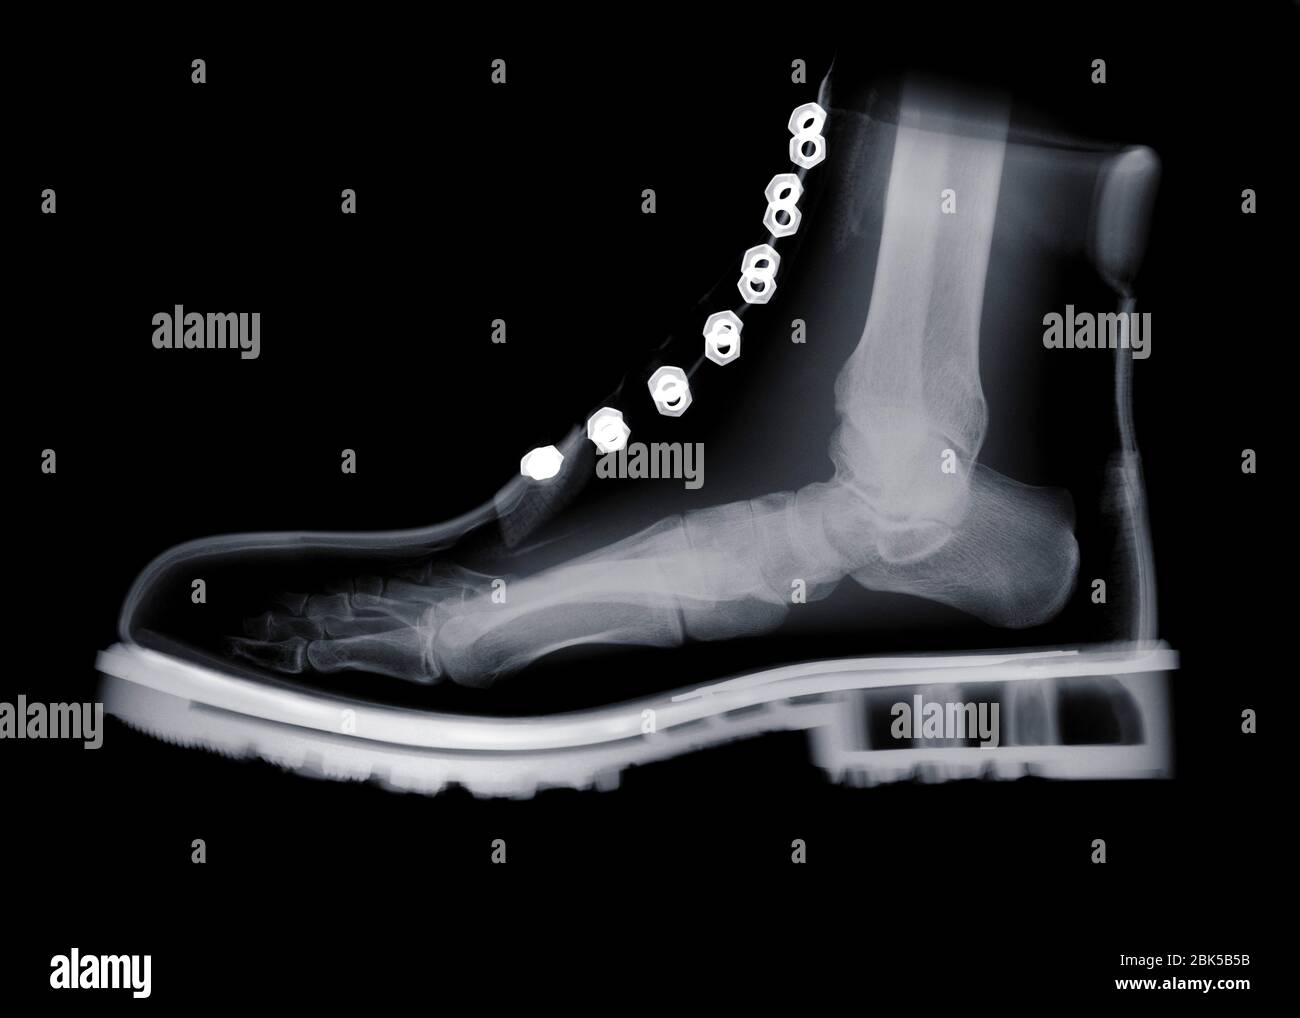 Pied humain à l'intérieur de la chaussure, radiographie. Banque D'Images